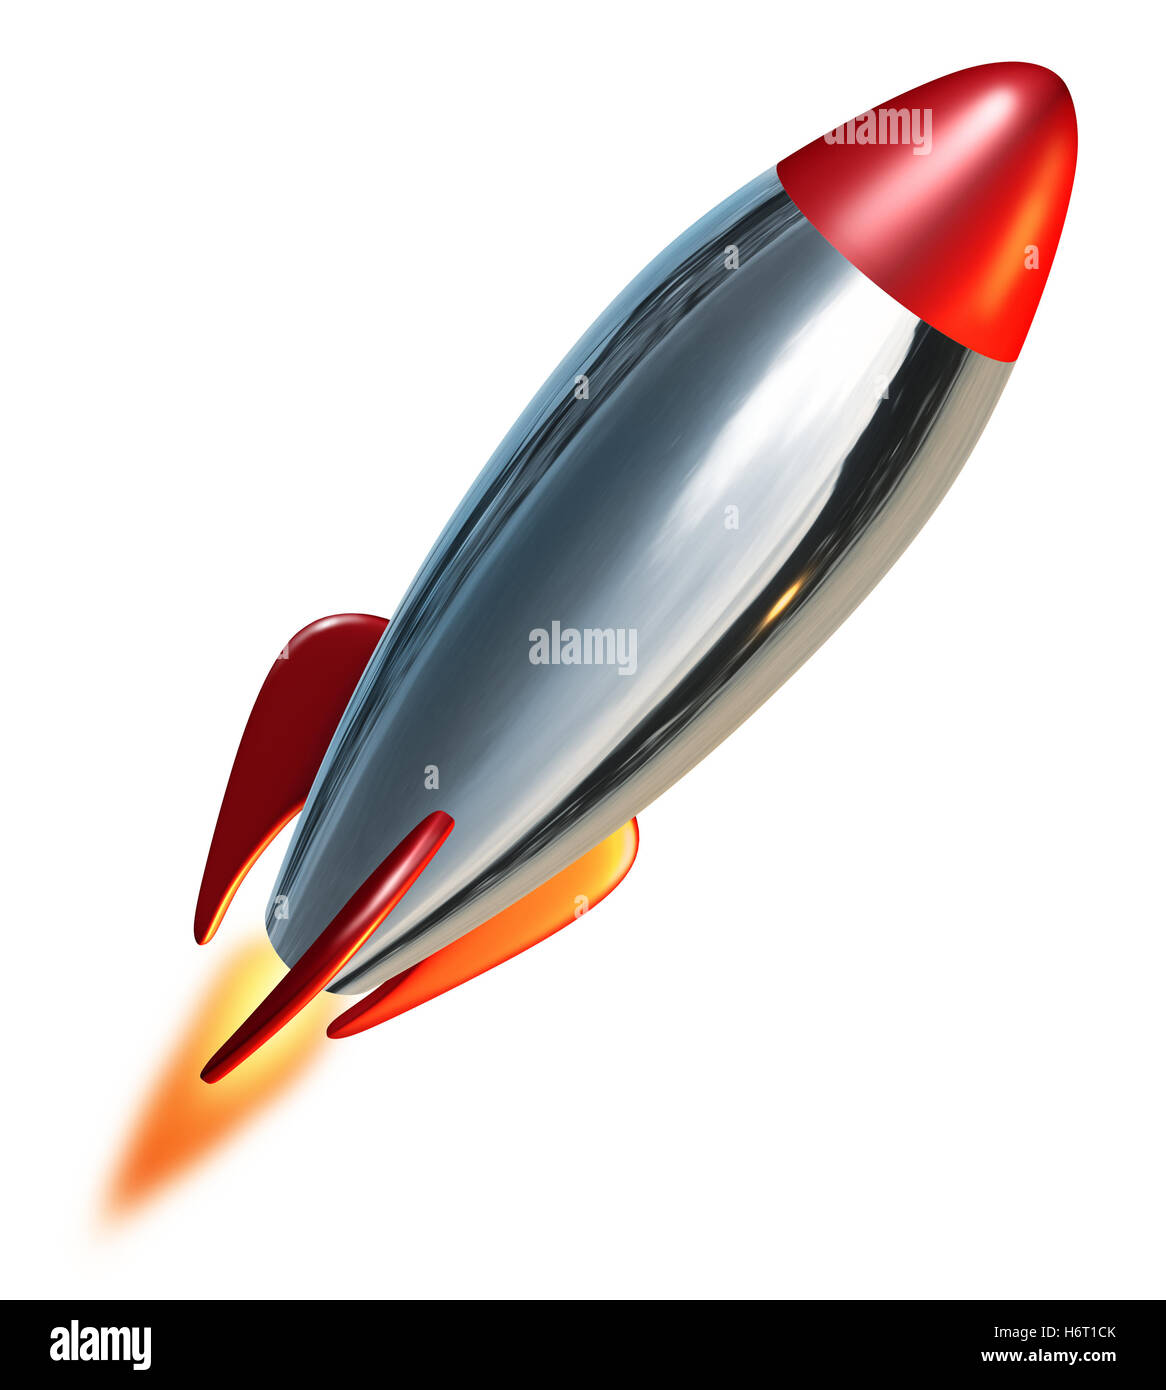 Vuelo espacial vehículo llamas llama combustión de cohetes de empuje ascendente exploración misiles despegan los vuelos espaciales de los cohetes brazo arma Foto de stock